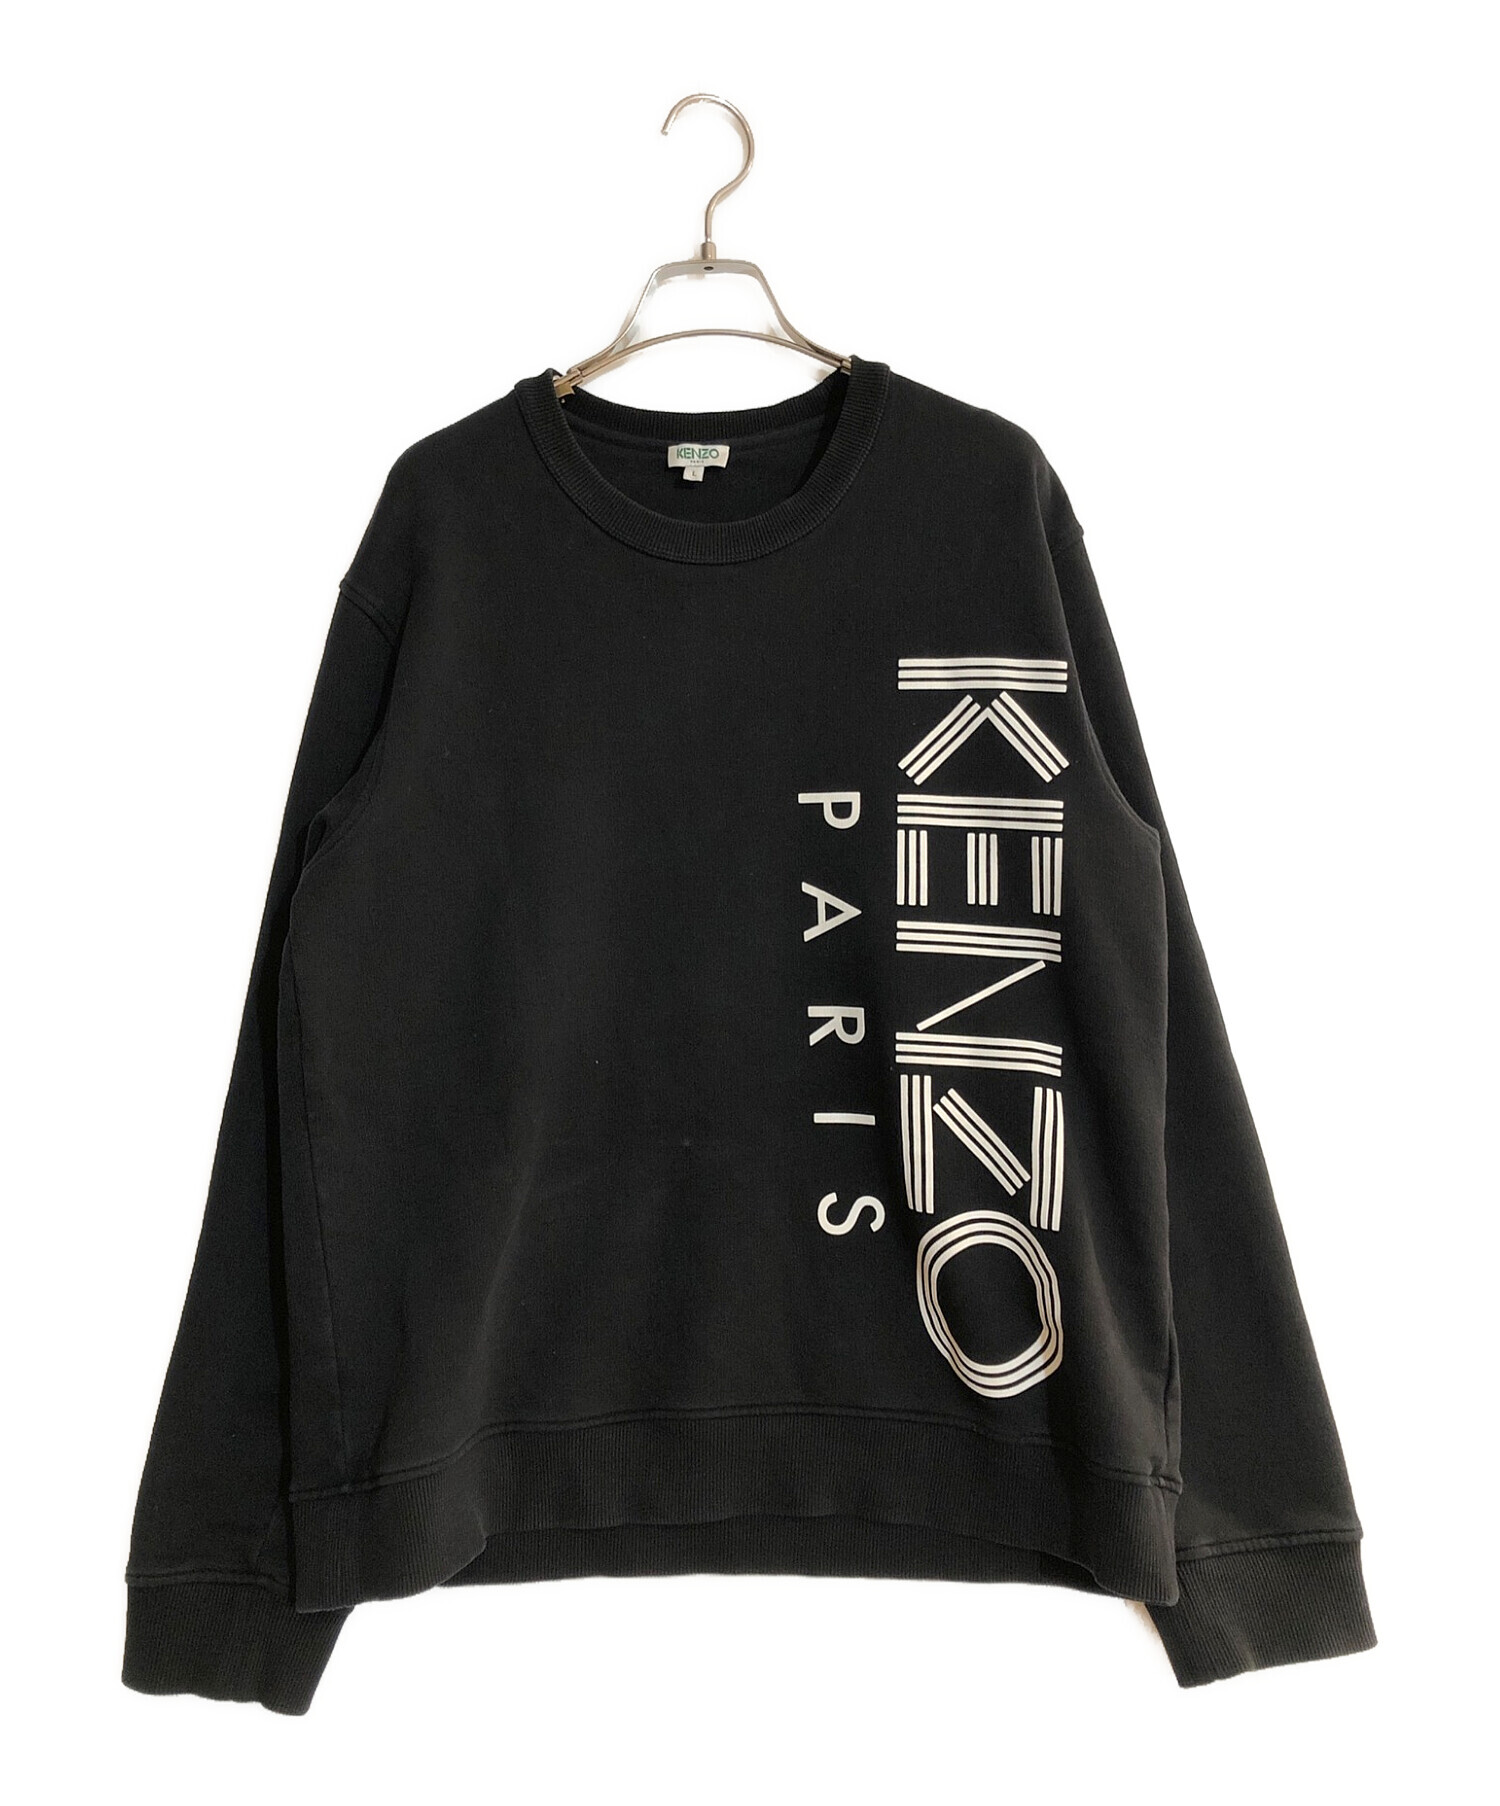 KENZO (ケンゾー) ロゴプリントスウェット ブラック サイズ:L